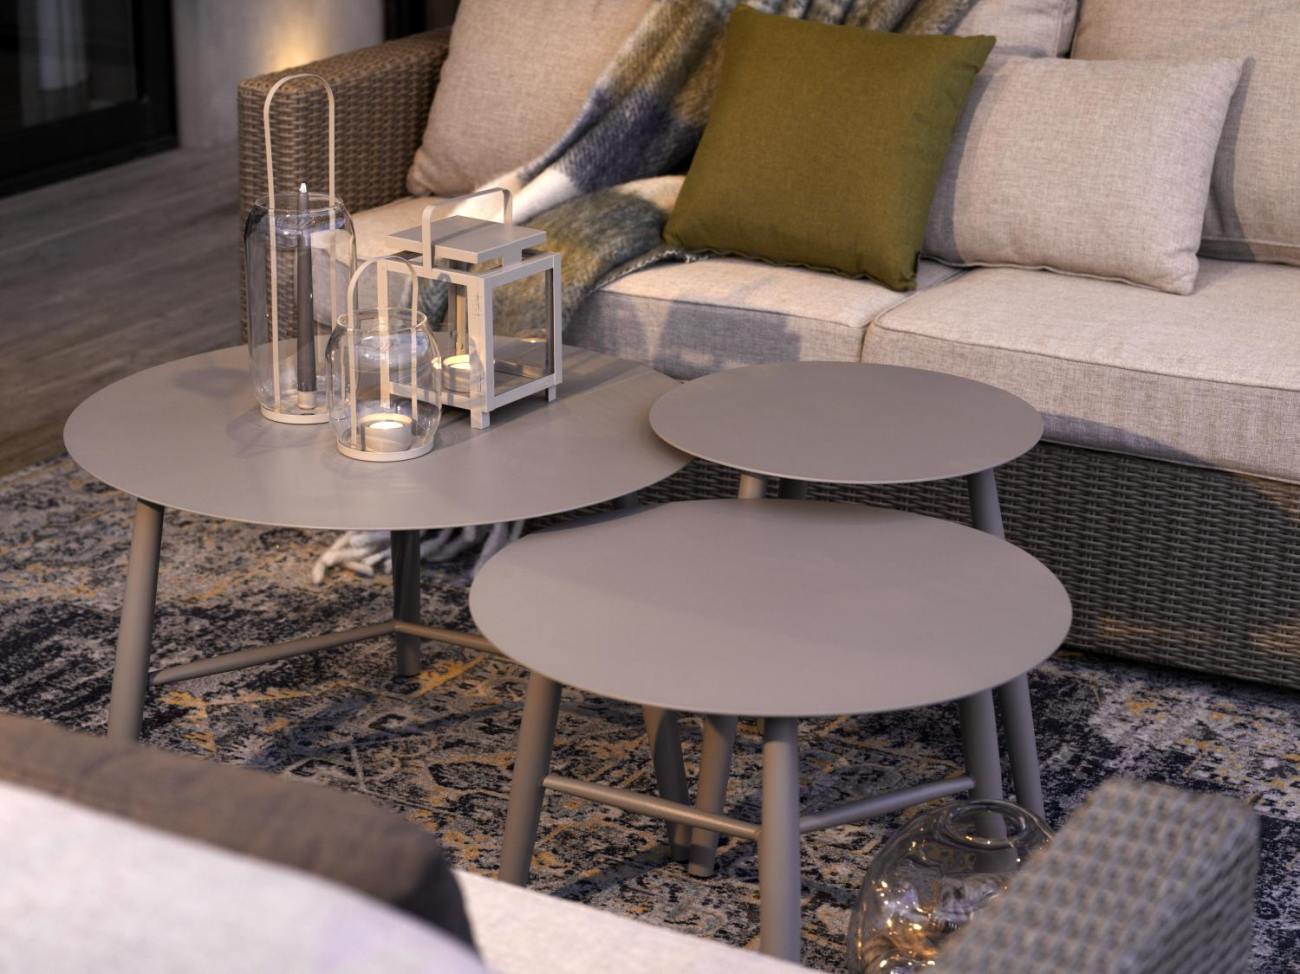 Der Gartenbeistelltisch Vannes überzeugt mit seinem modernen Design. Gefertigt wurde die Tischplatte aus Metall, welche einen Kaki Farbton besitzt. Das Gestell ist auch aus Metall und hat eine Kaki Farbe. Der Tisch besitzt einen Durchmesser von 60 cm.